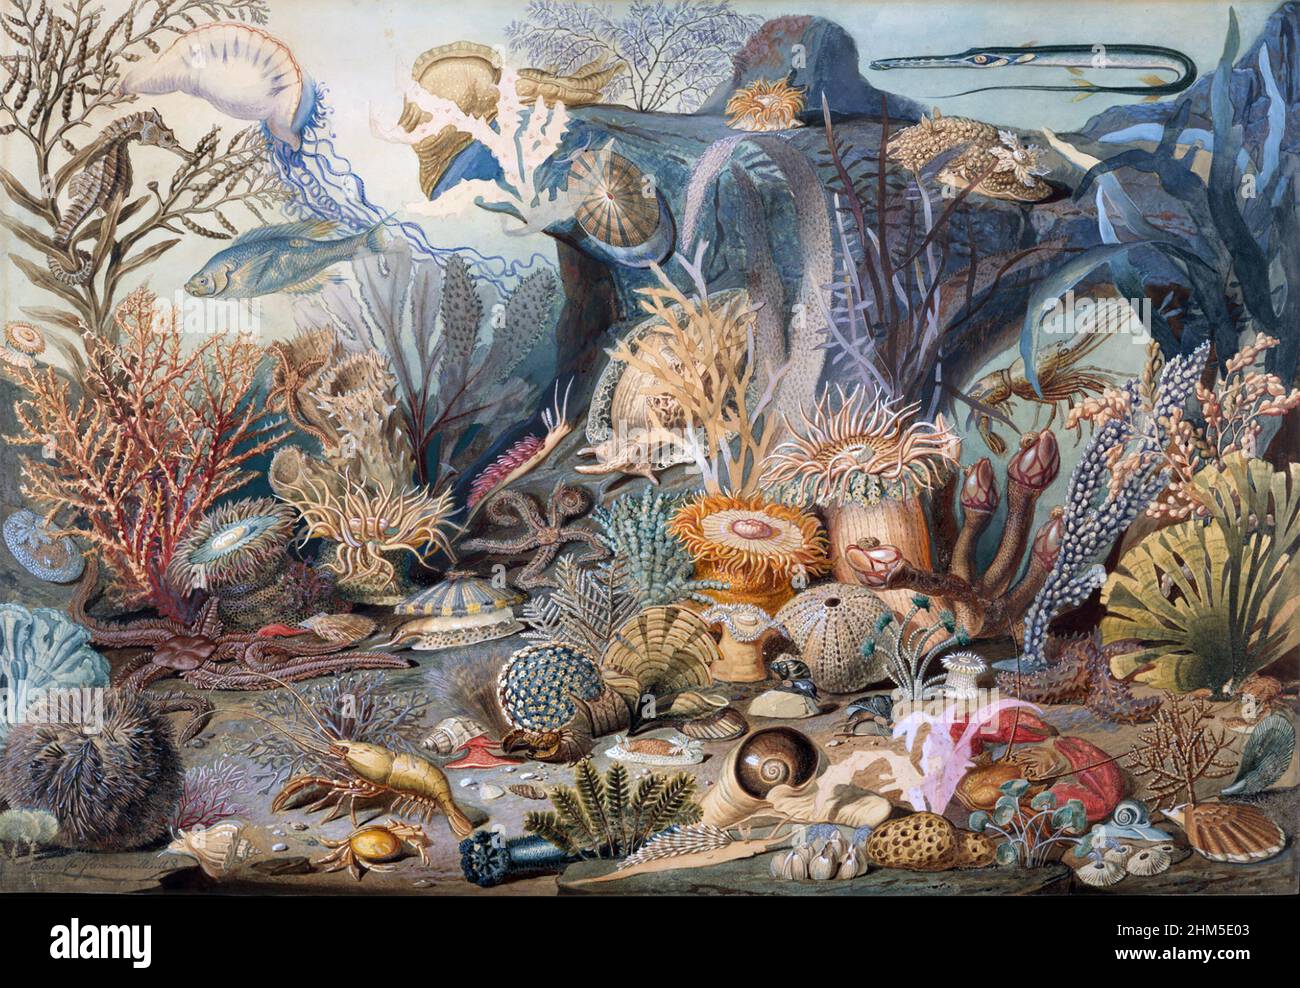 CHRISTIAN SCHUSSELE (1824-1879) artiste américain. Imprimé de son aquarelle Ocean Life peint vers 1859. La peinture originale est dans le New York Metropolitan Museum of Art Banque D'Images